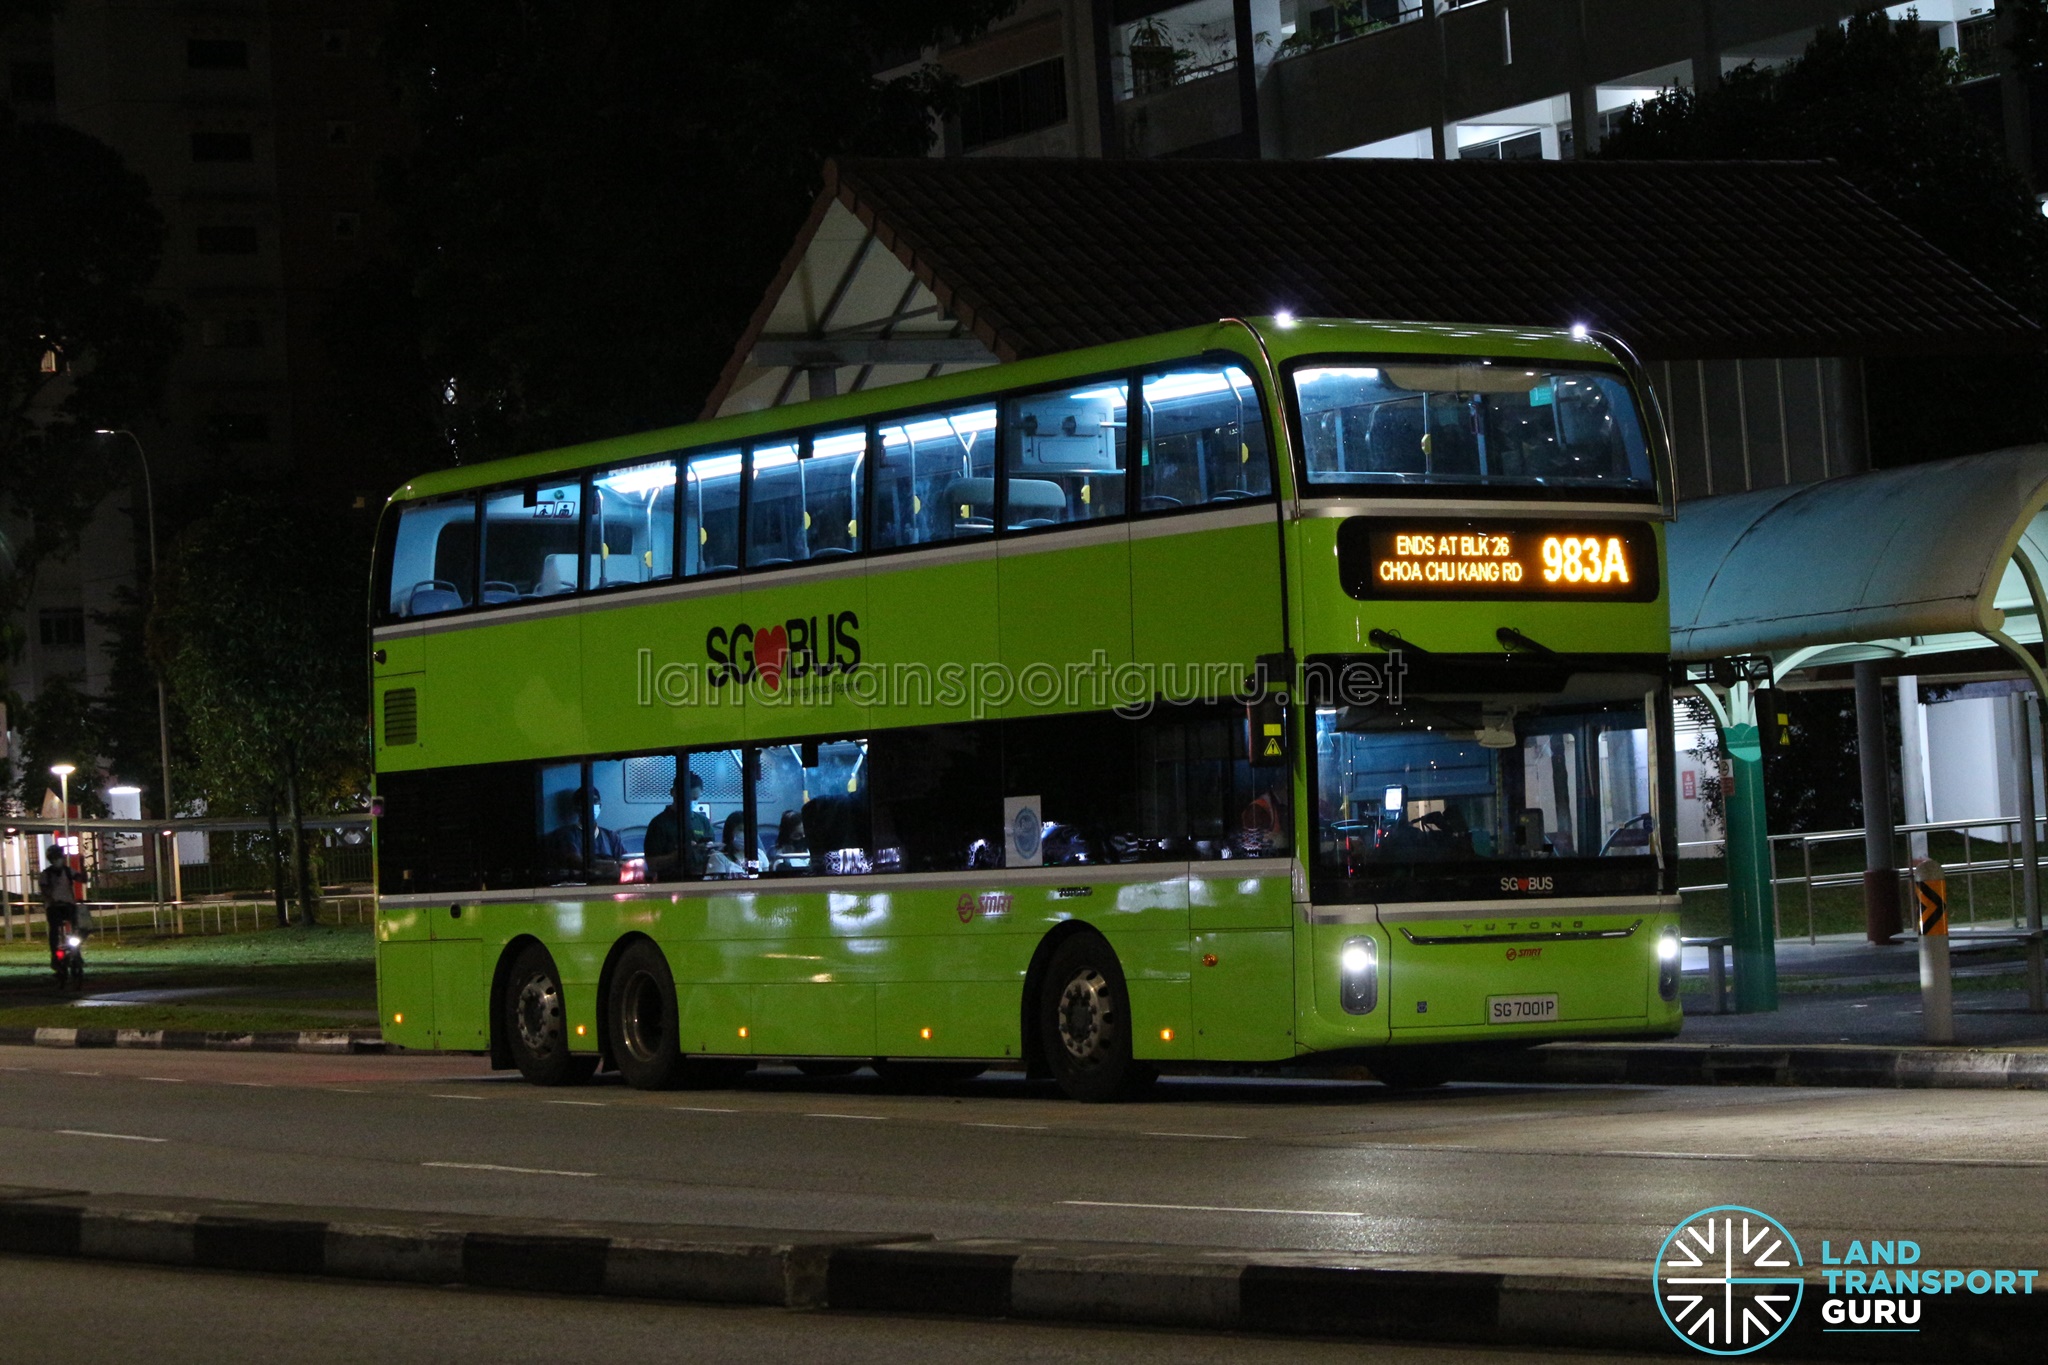 SMRT Bus Service 983A